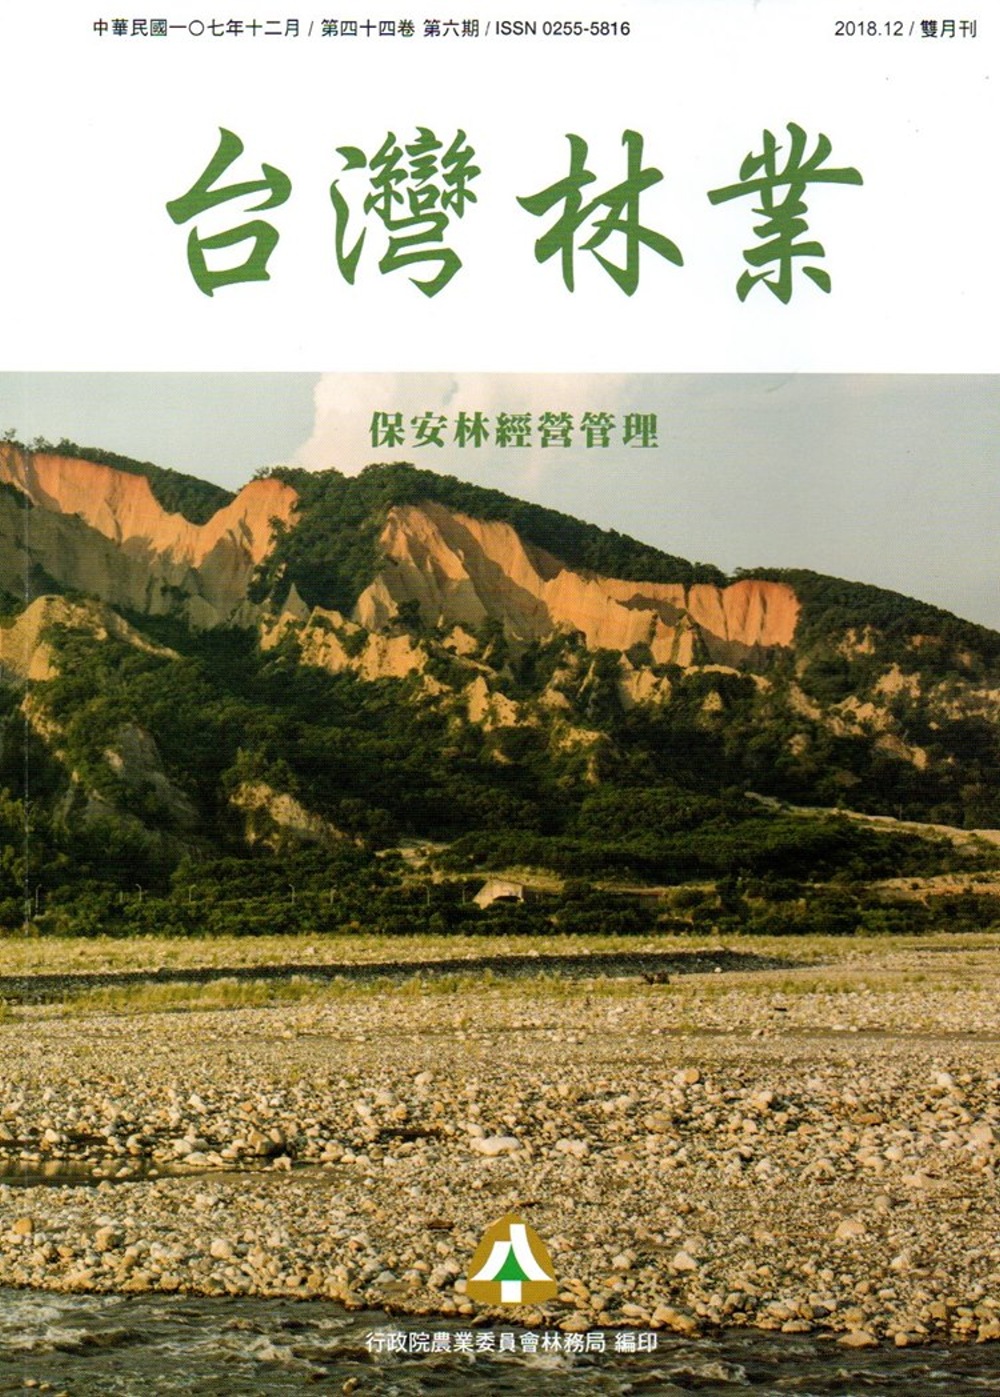 台灣林業44卷6期(2018.12)